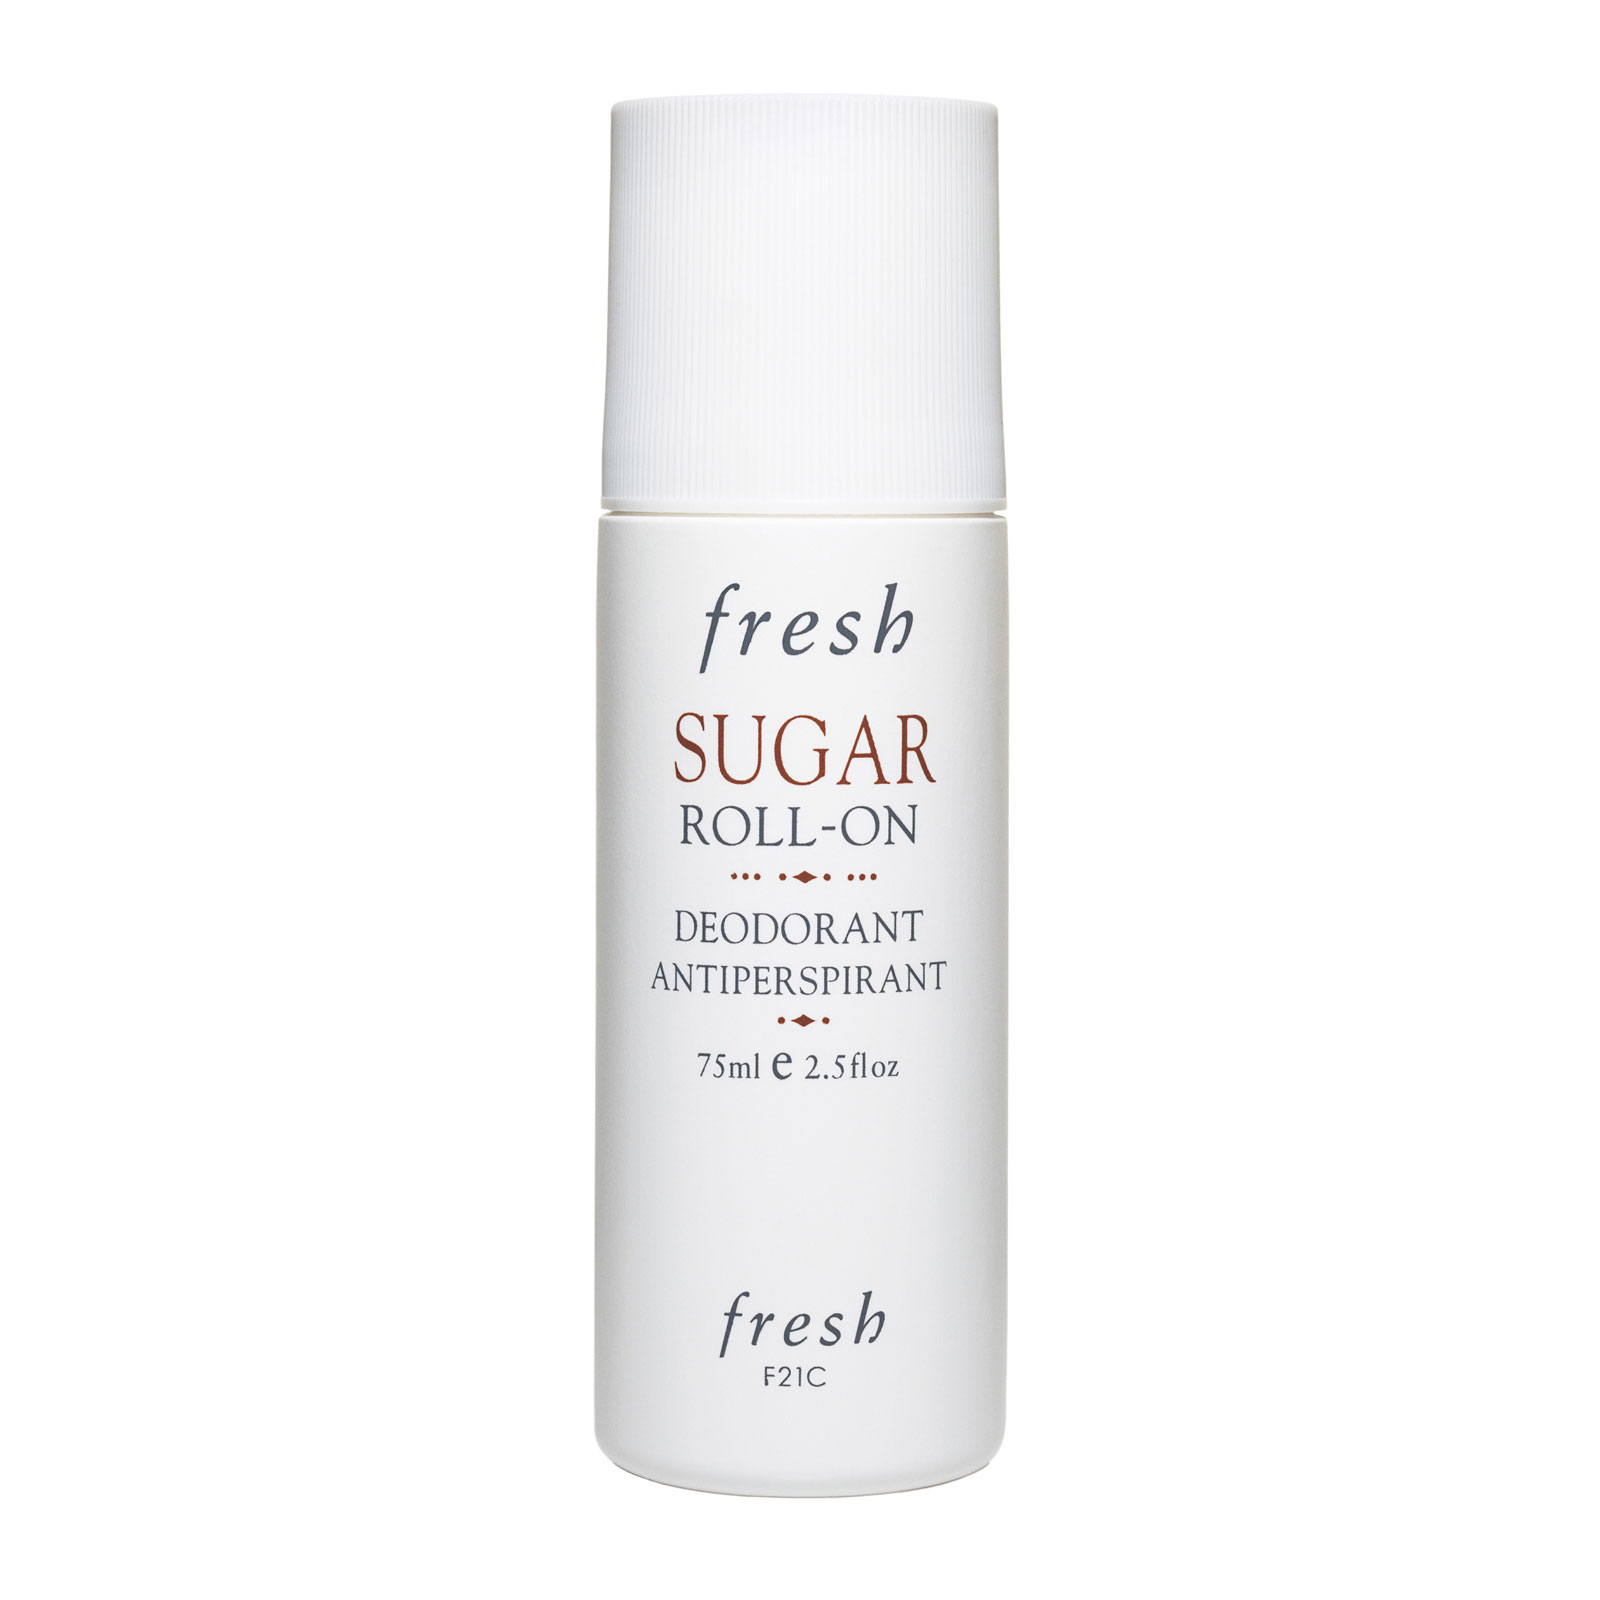 Fresh Sugar Roll-On Deodorant Antiperspirant 75Ml